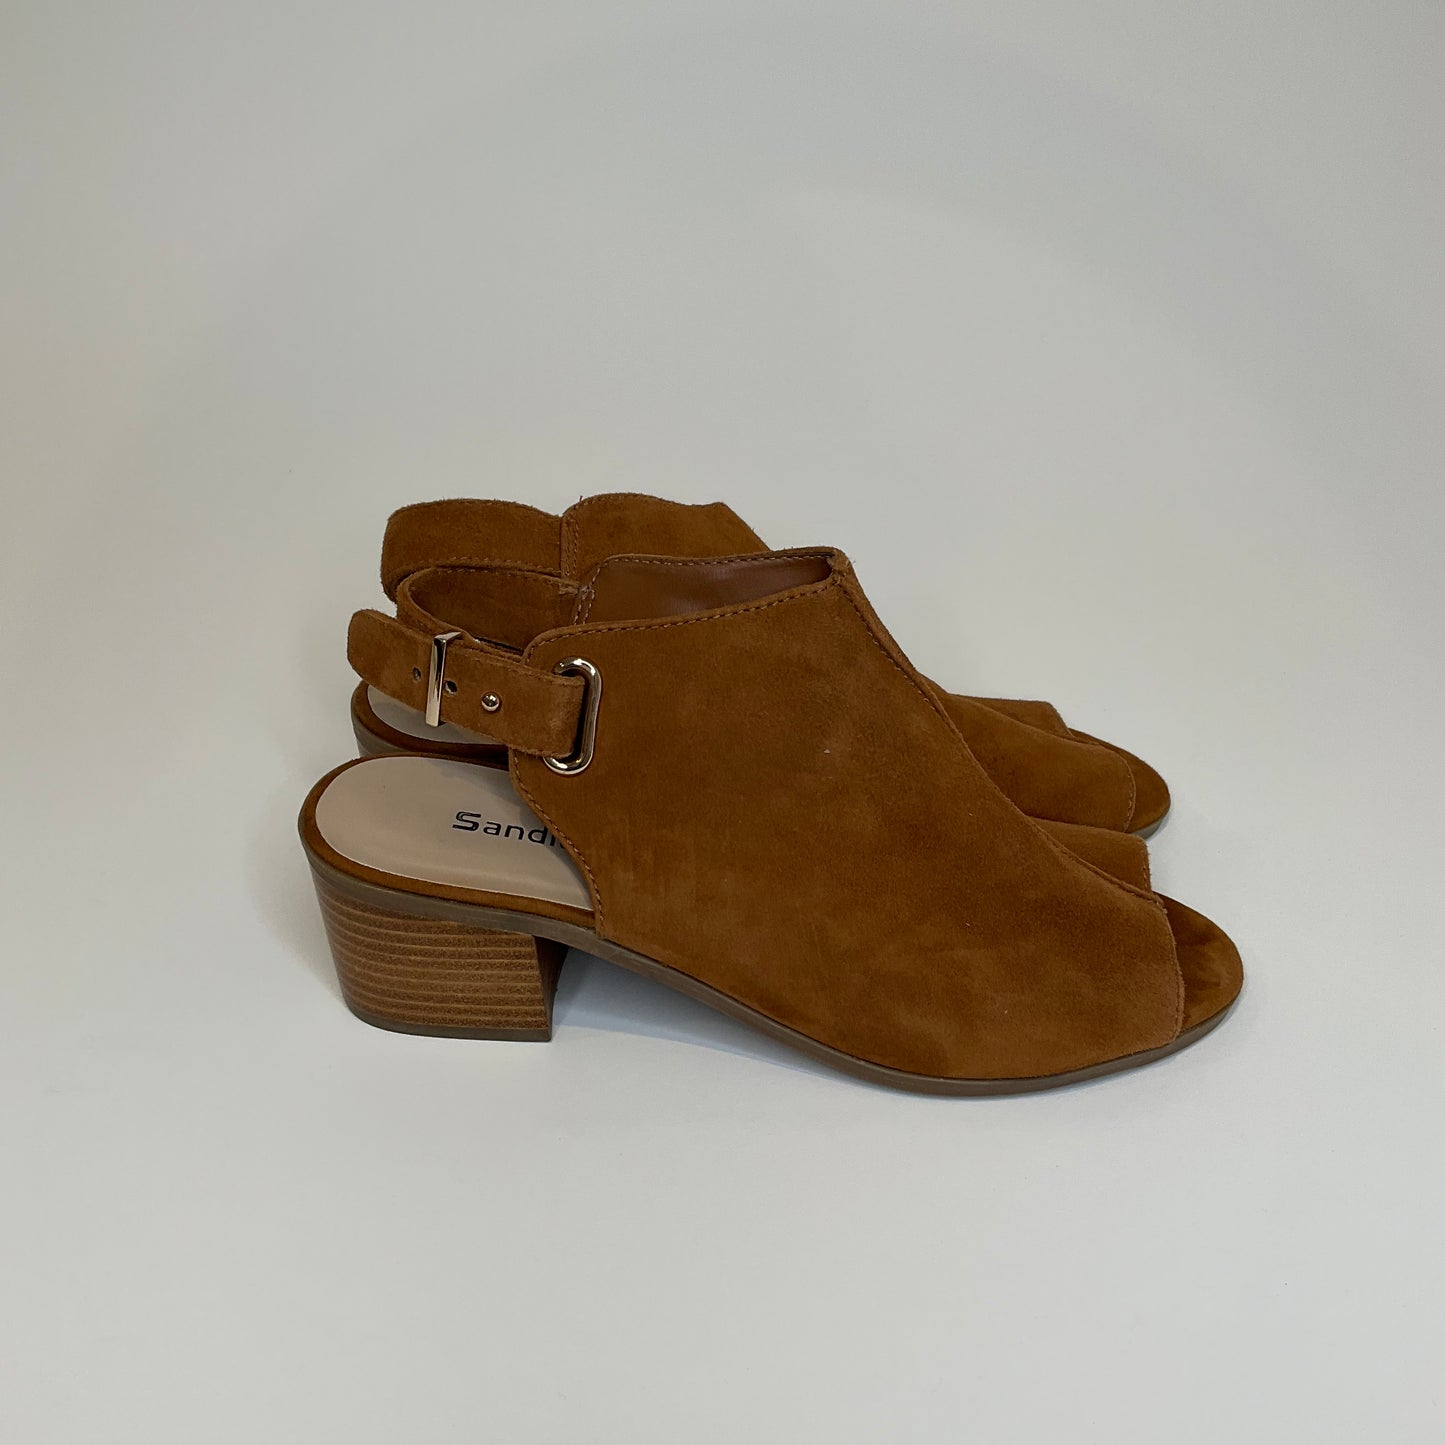 Sandler - Shoes - Size 7.5